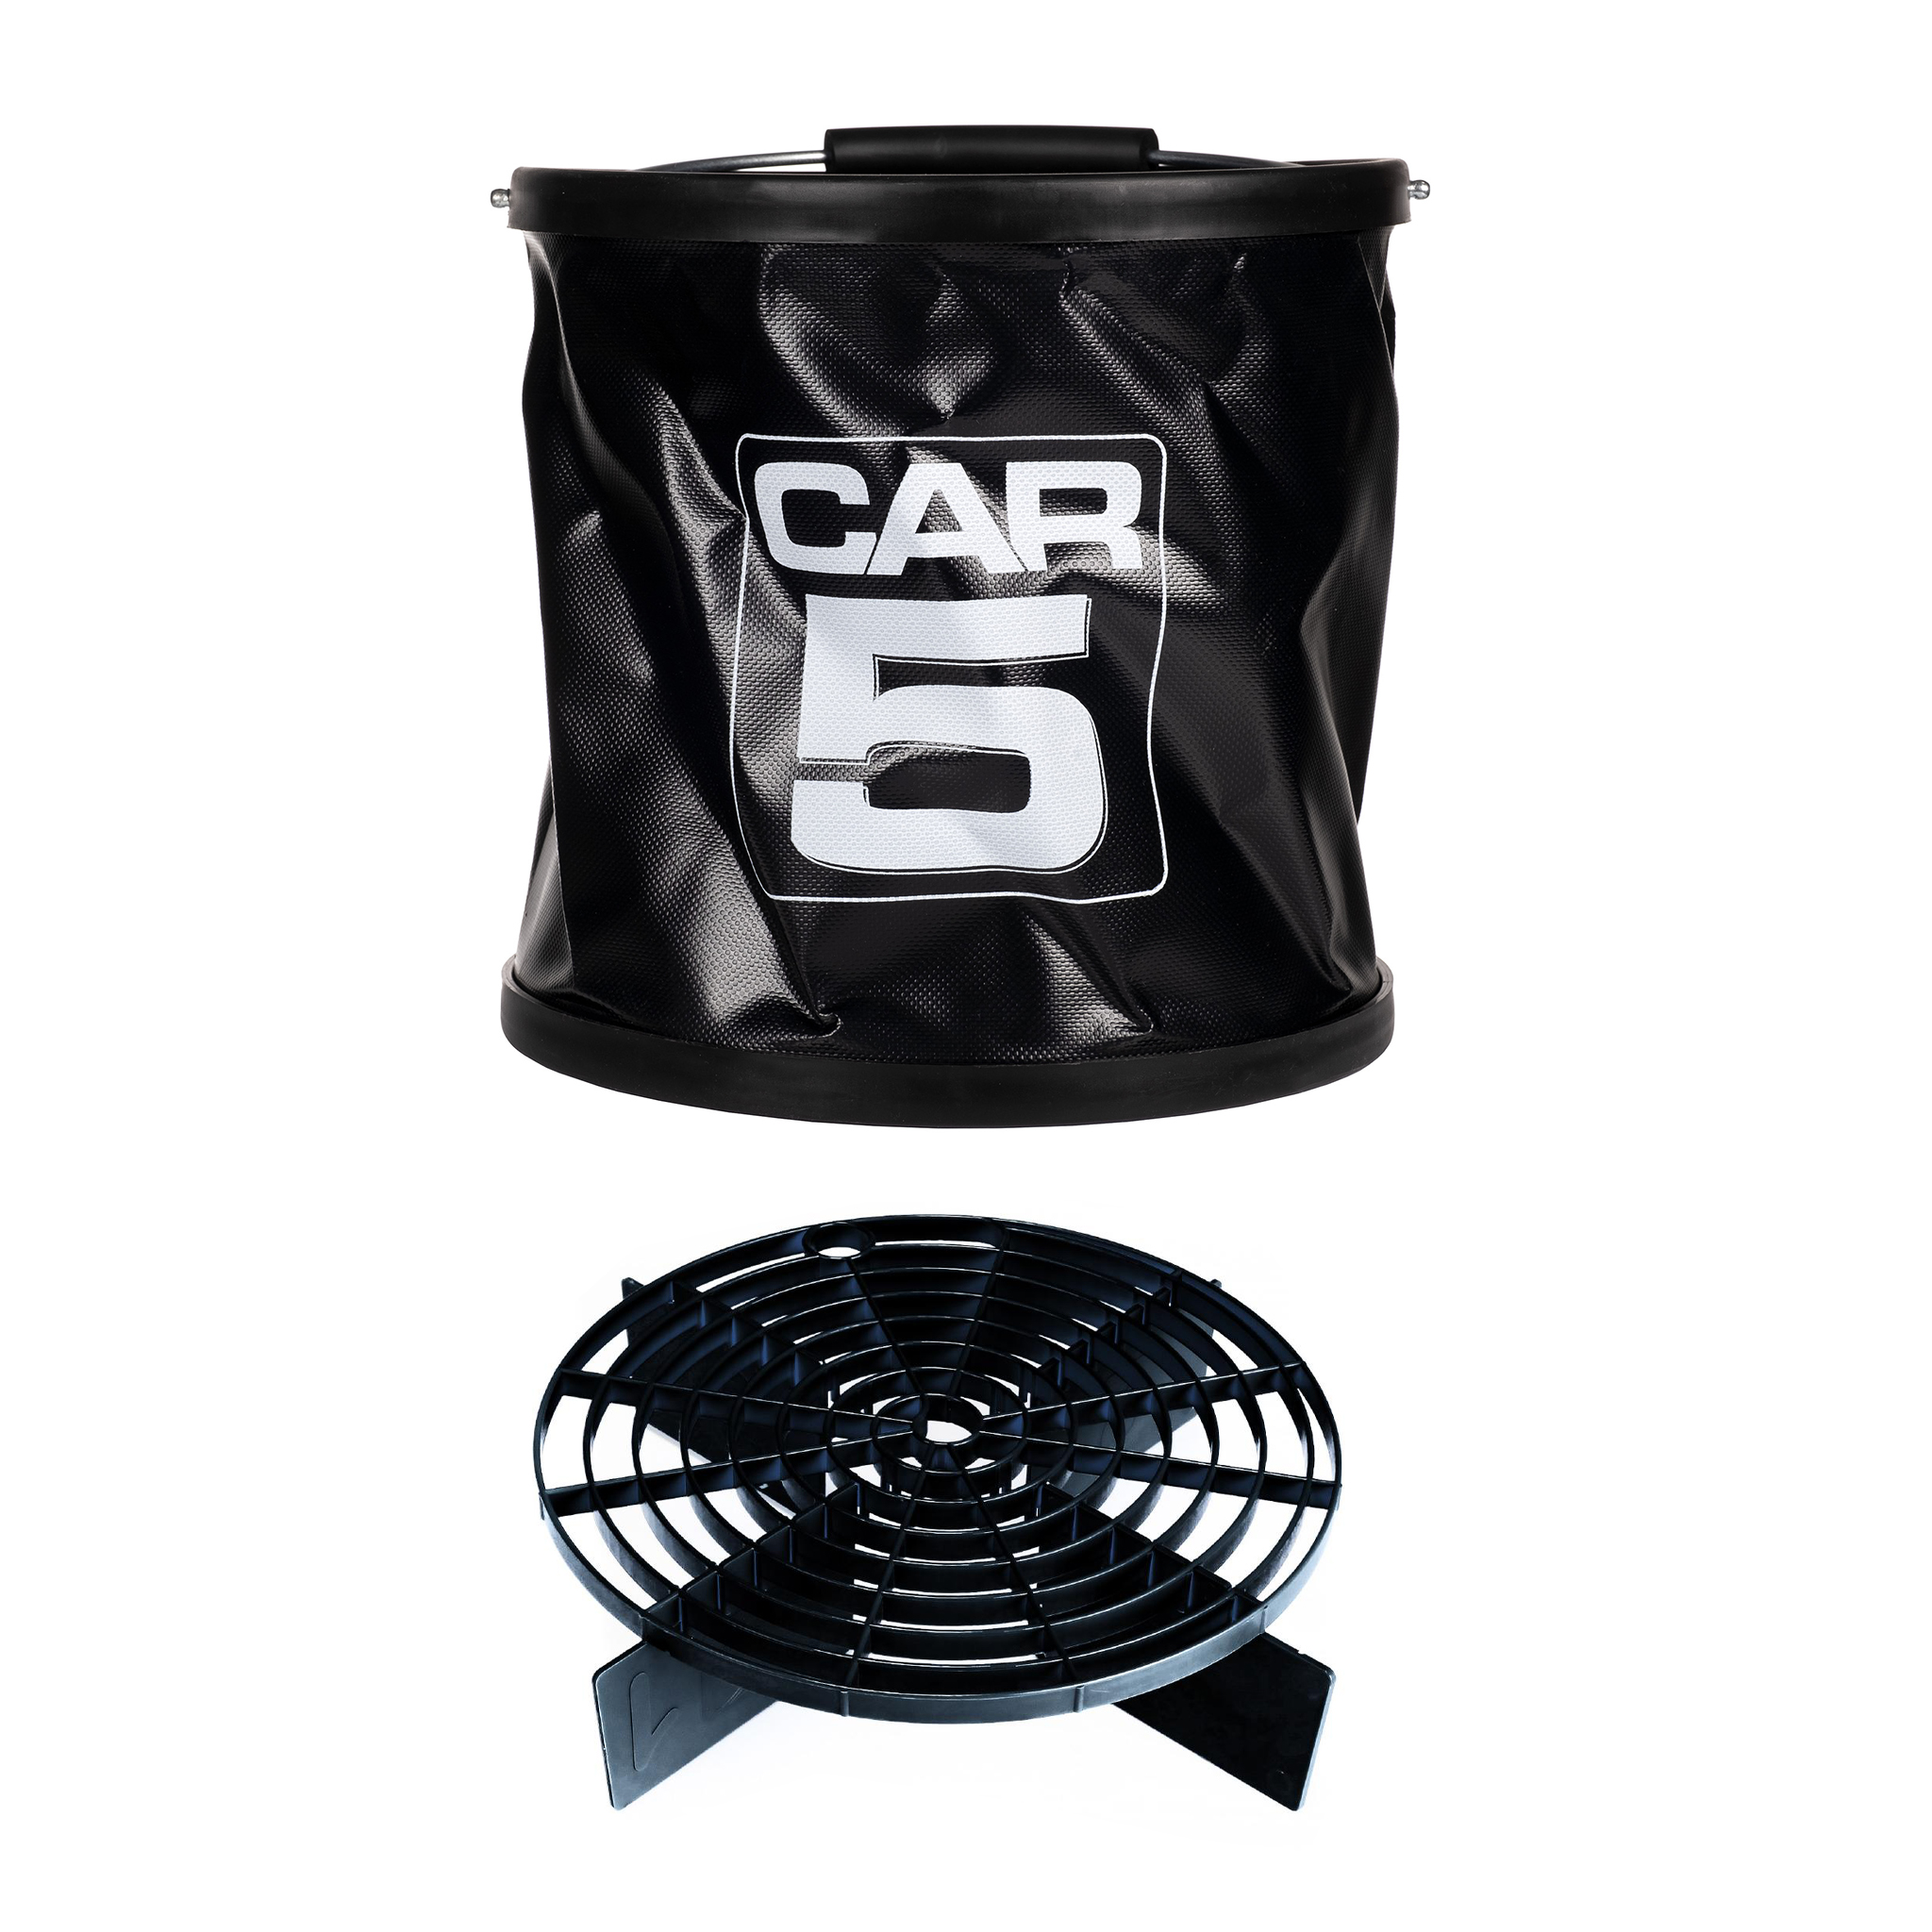 Sammenleggbar Vaskebøtte CAR5 Collapsible, 15 liter, 1 stk + sandutskiller